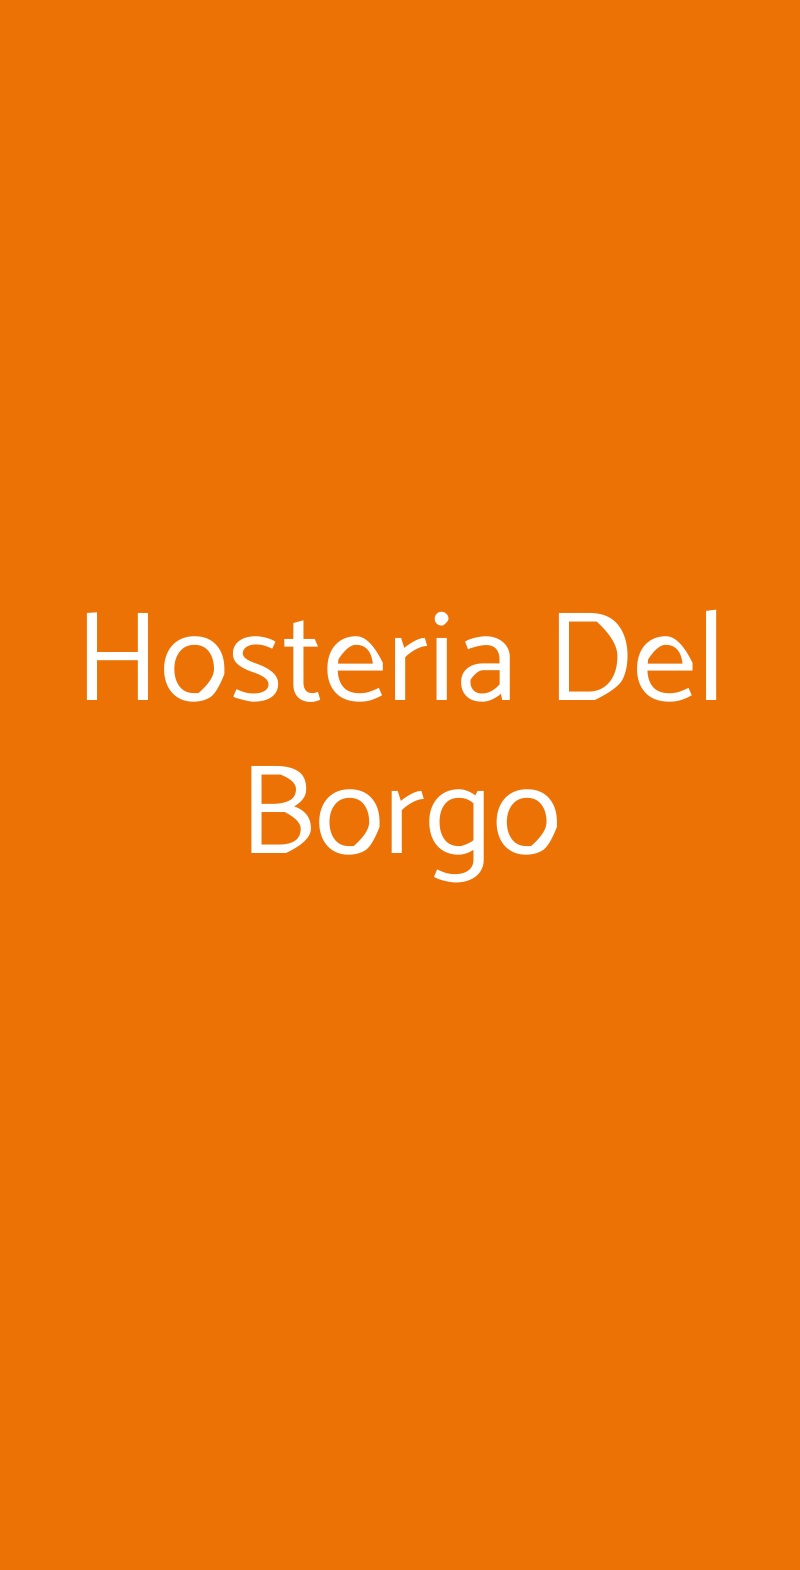 Hosteria Del Borgo Sorano menù 1 pagina